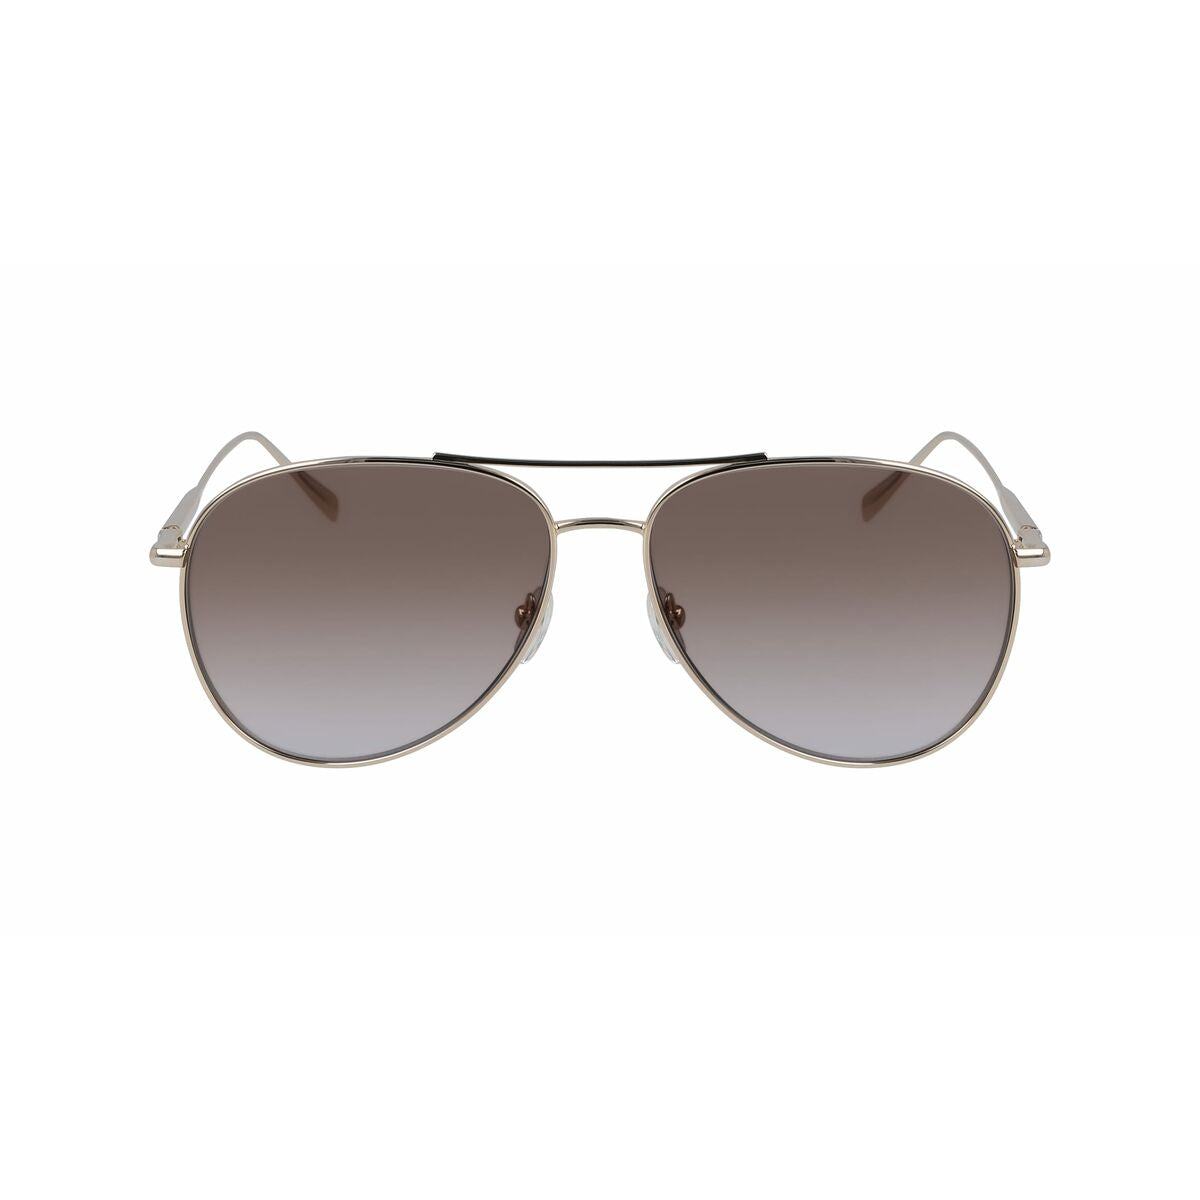 Kaufe Damensonnenbrille Longchamp LO139S-718 ø 59 mm bei AWK Flagship um € 66.00